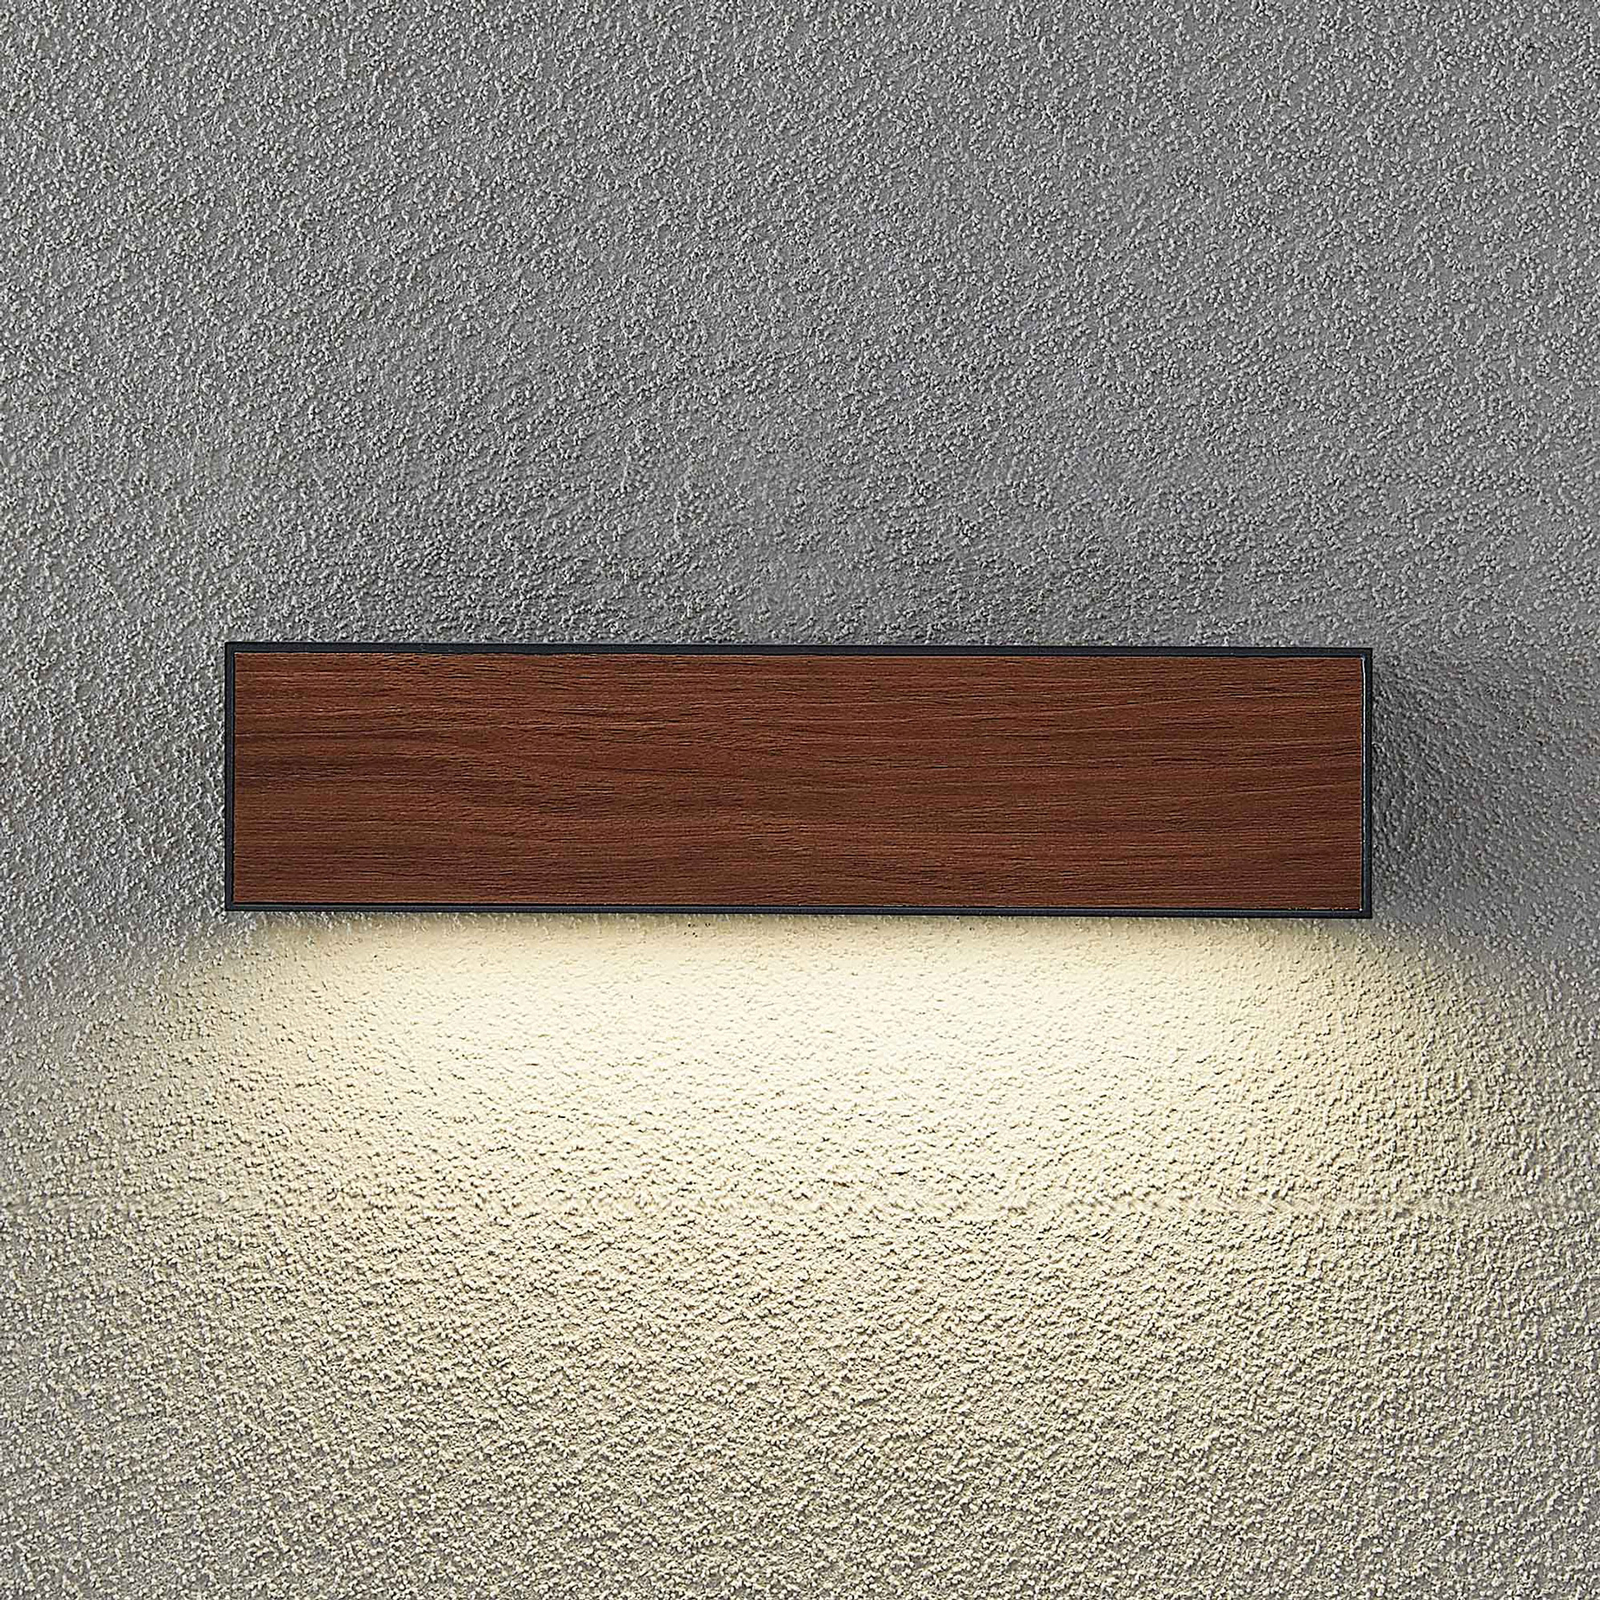 Arcchio LED buitenwandlamp Lengo, CCT, 25 cm, 1-lamp, hout